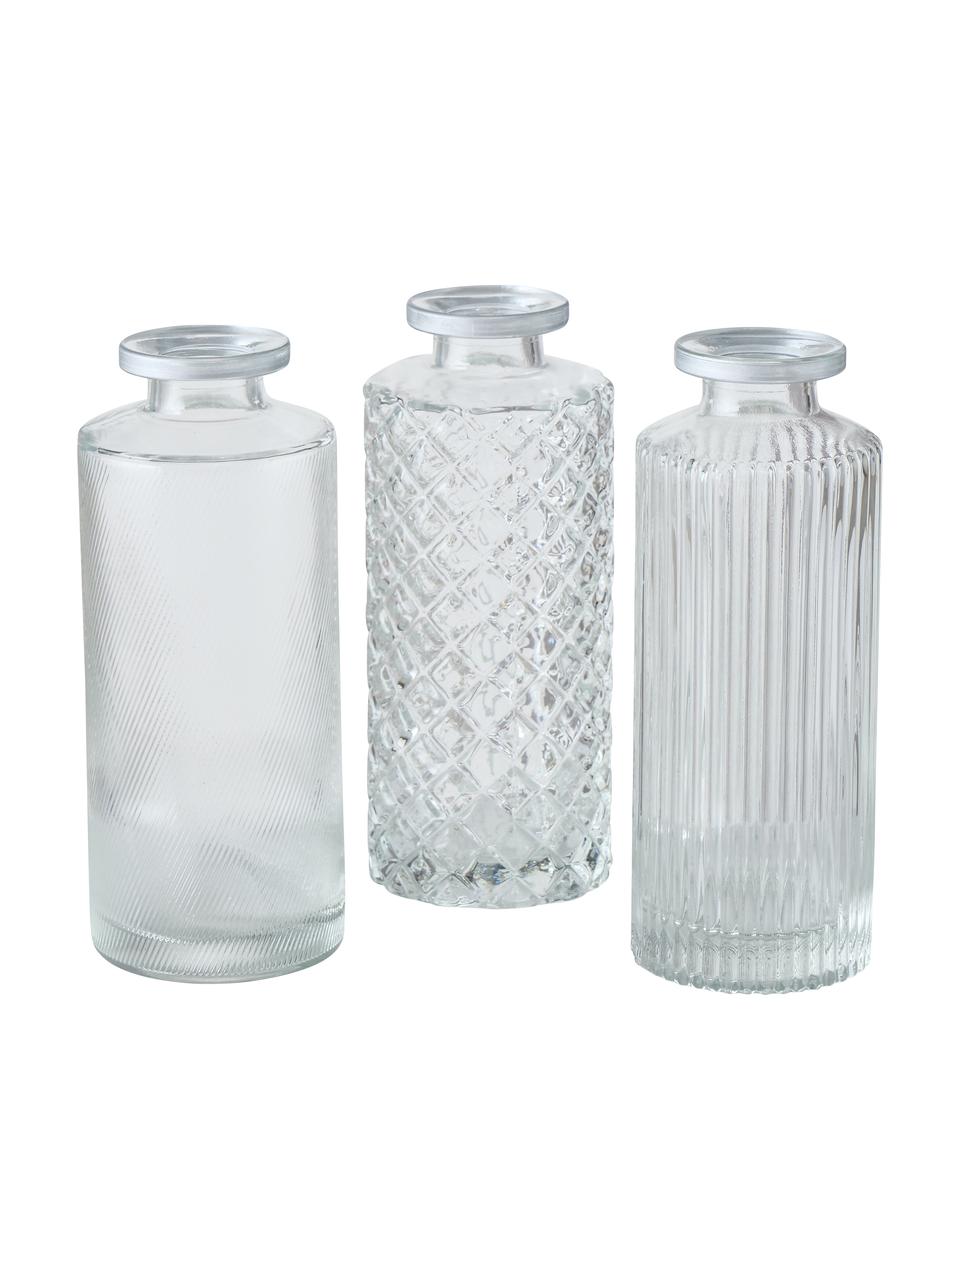 Kleines Vasen-Set Adore aus Glas, 3-tlg., Glas, Transparent mit Silberrand, Ø 5 x H 13 cm